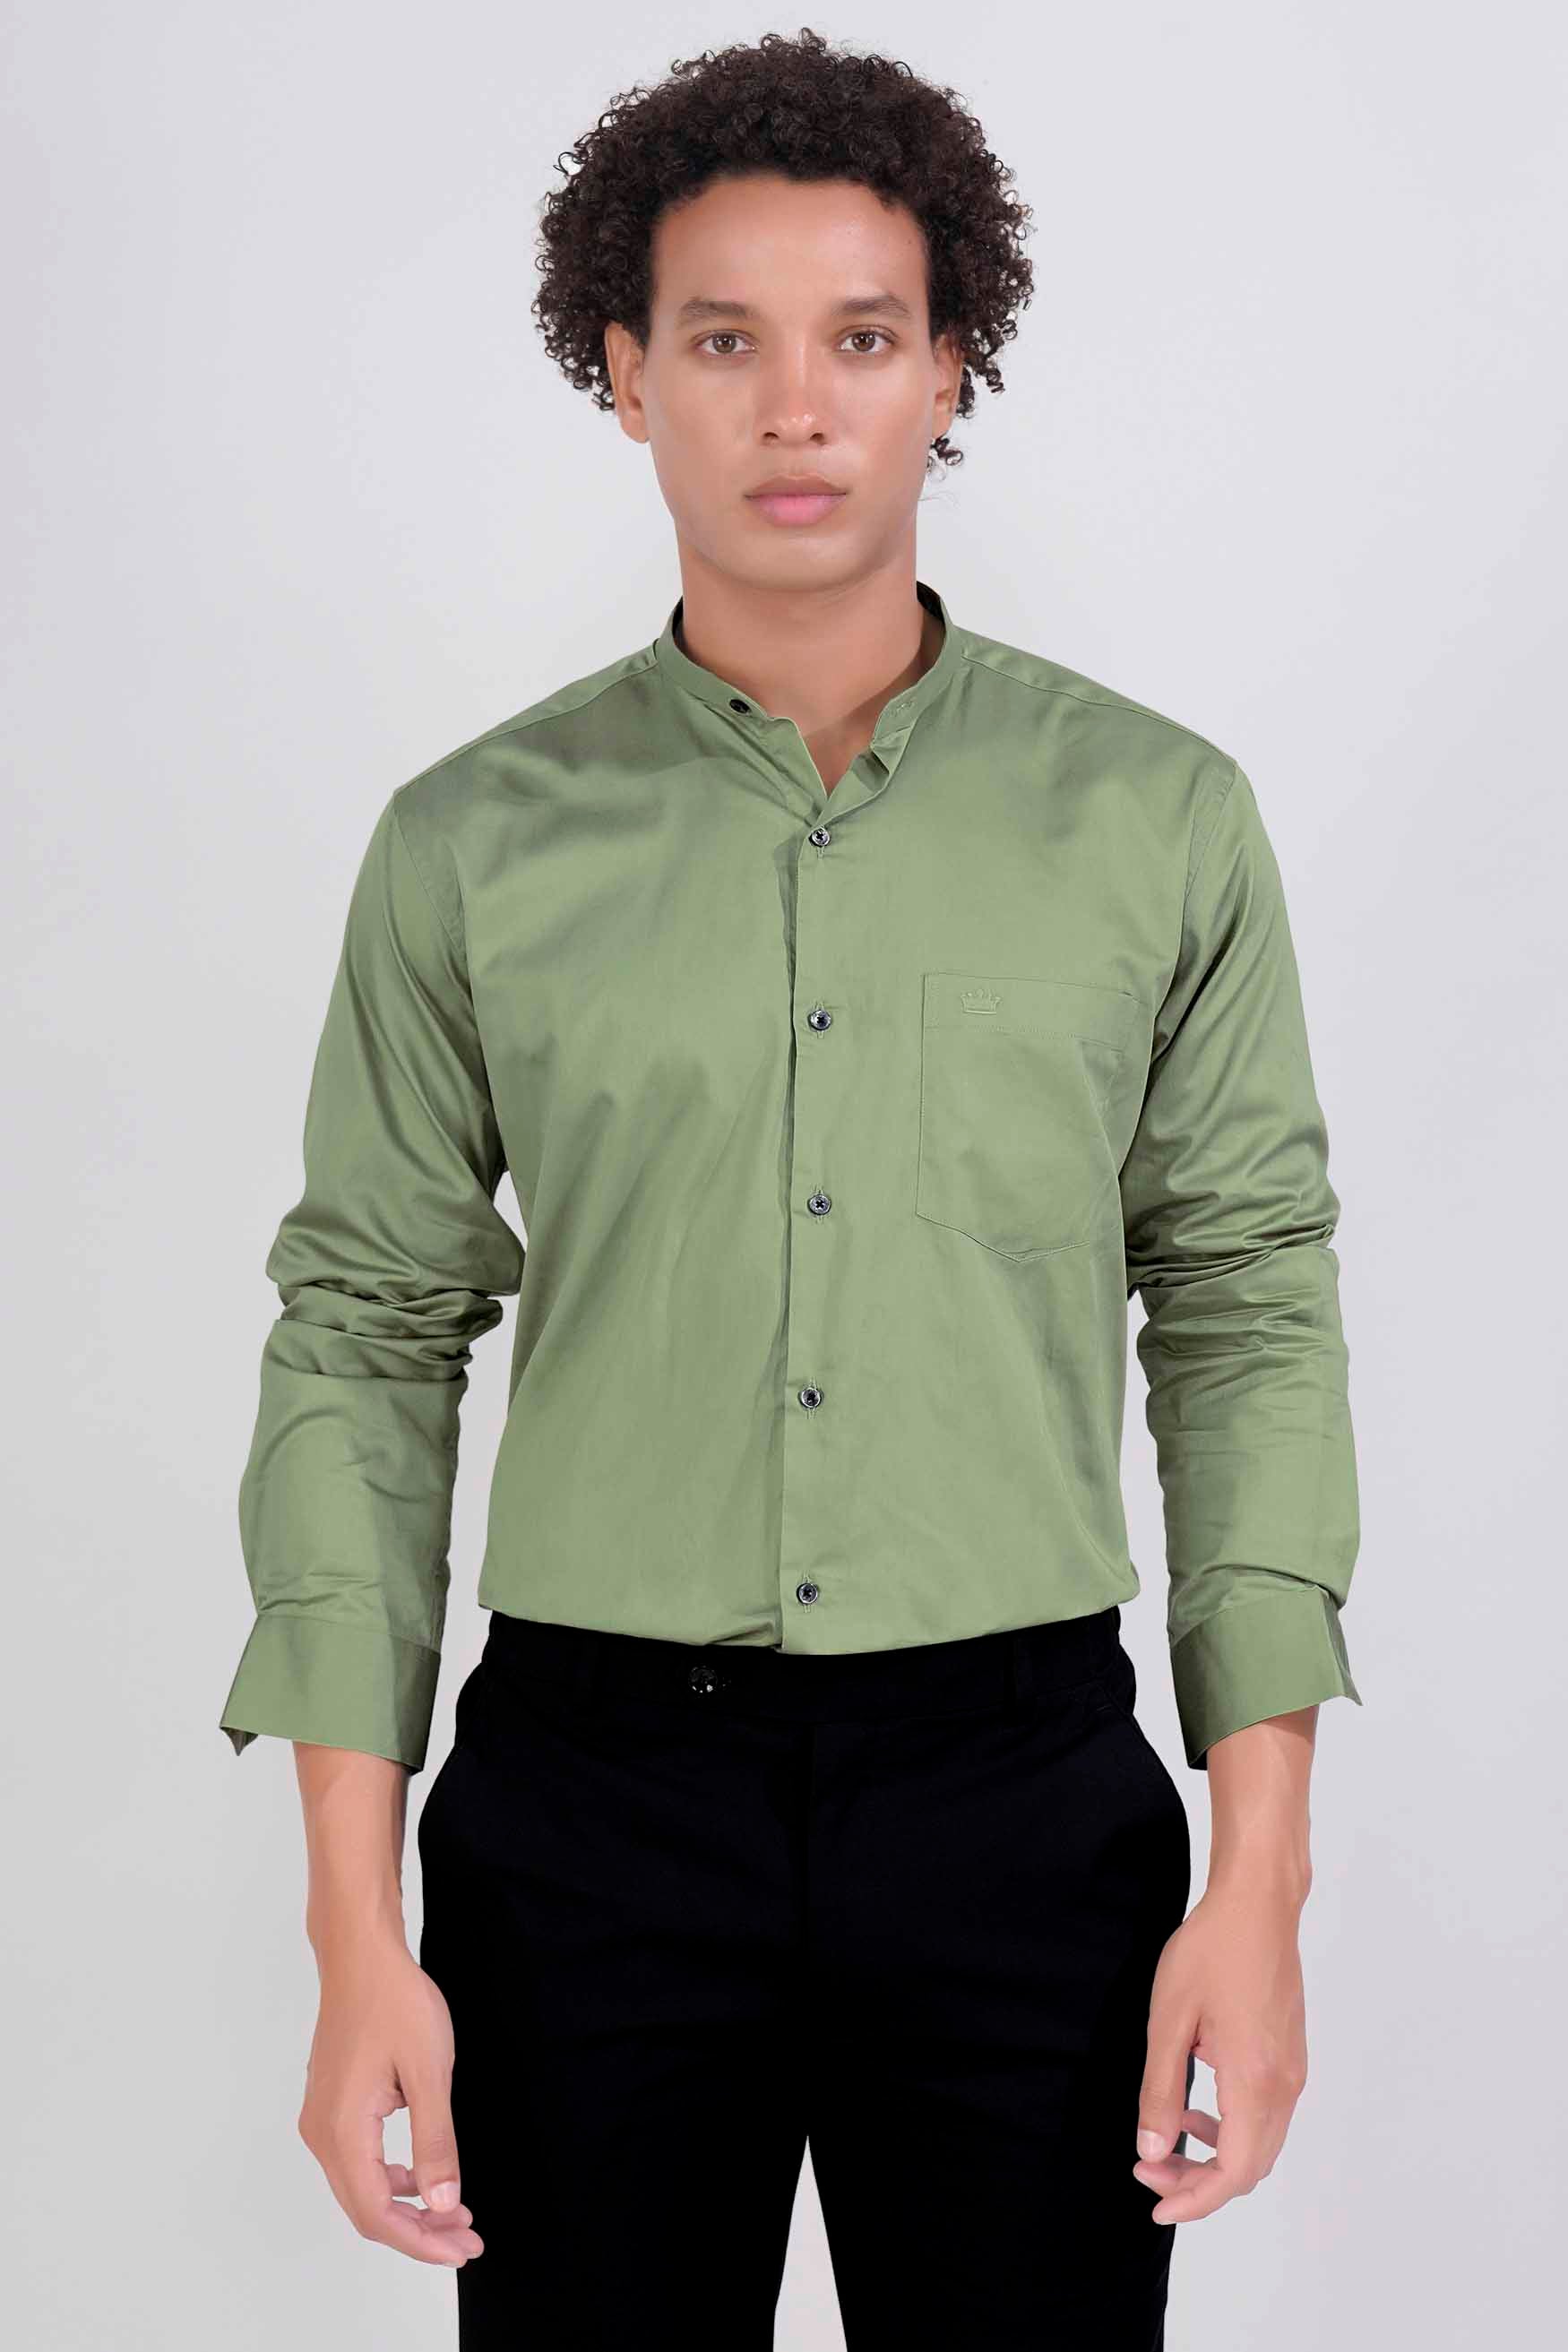 Pale Oyster Green Subtle Sheen Super Soft Premium Cotton Mandarin Shirt